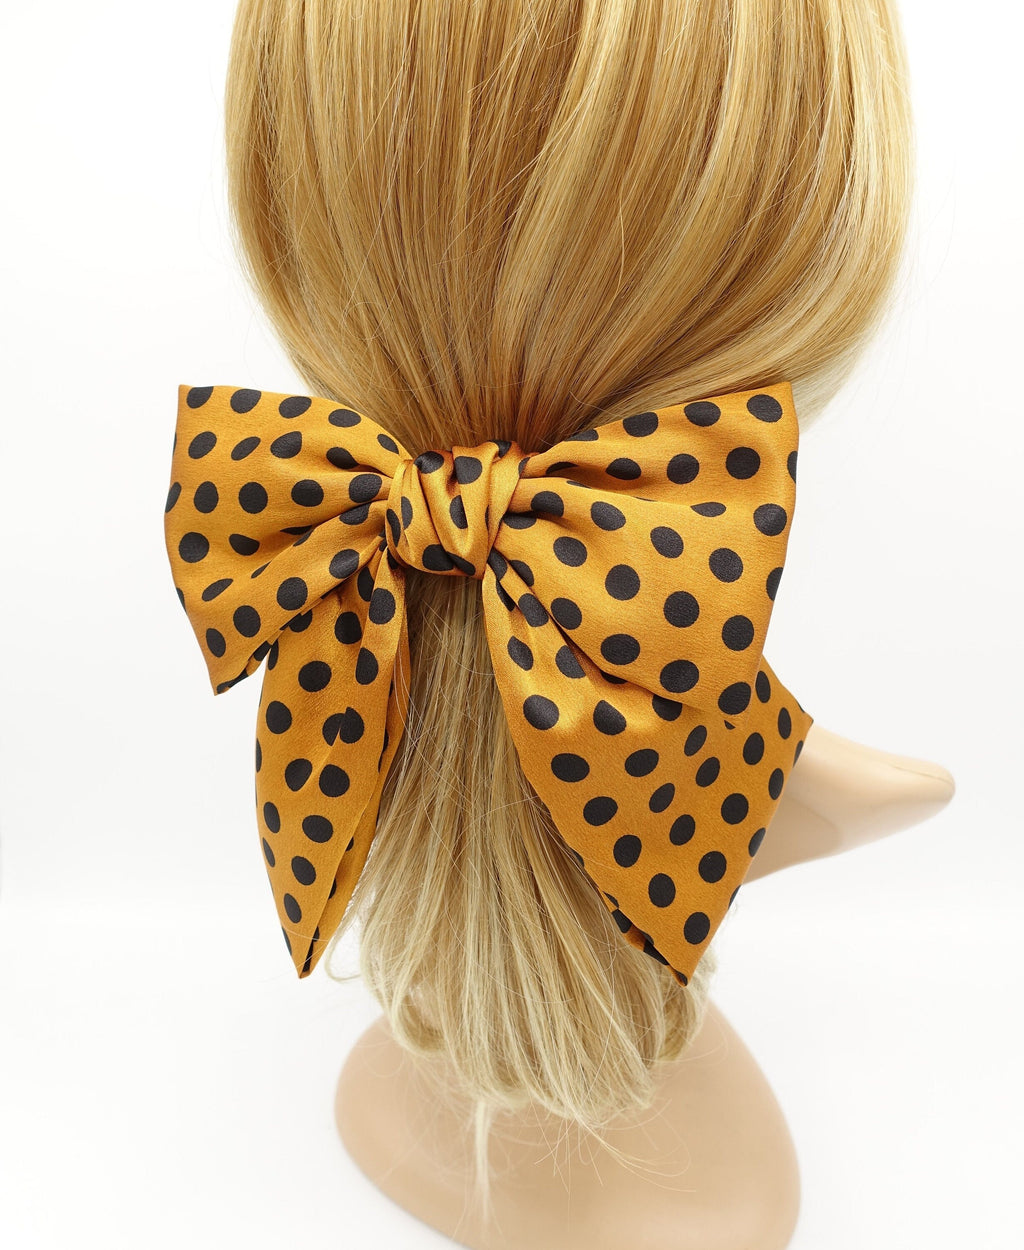 veryshine.com Barrette (Bow) Golden orange polka dot hair bow silk satin glossy hair french barrette for women